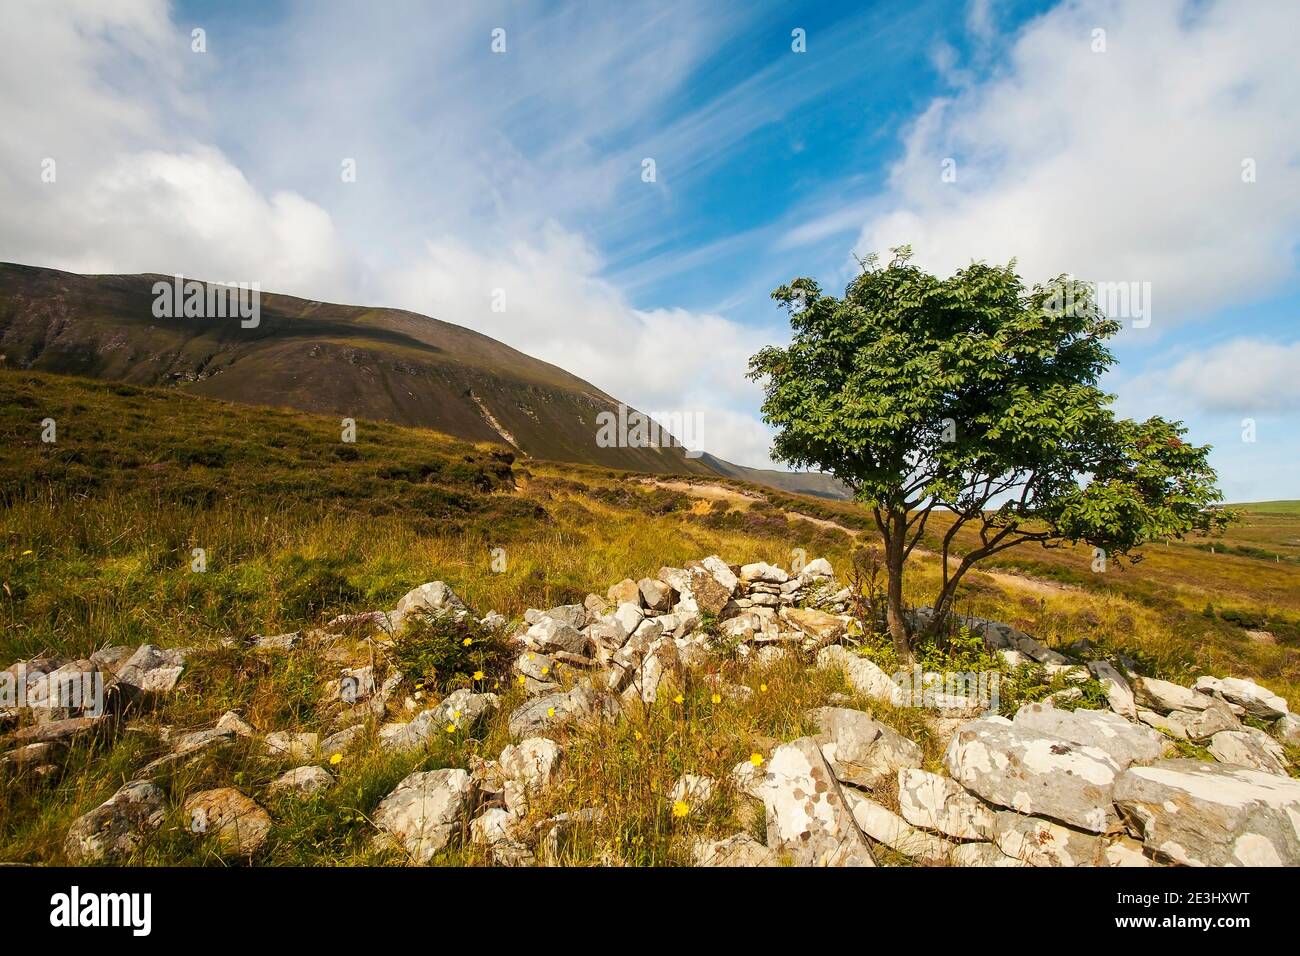 Un pequeño árbol con rocas en primer plano y colina detrás con cielo azul con nubes blancas Foto de stock